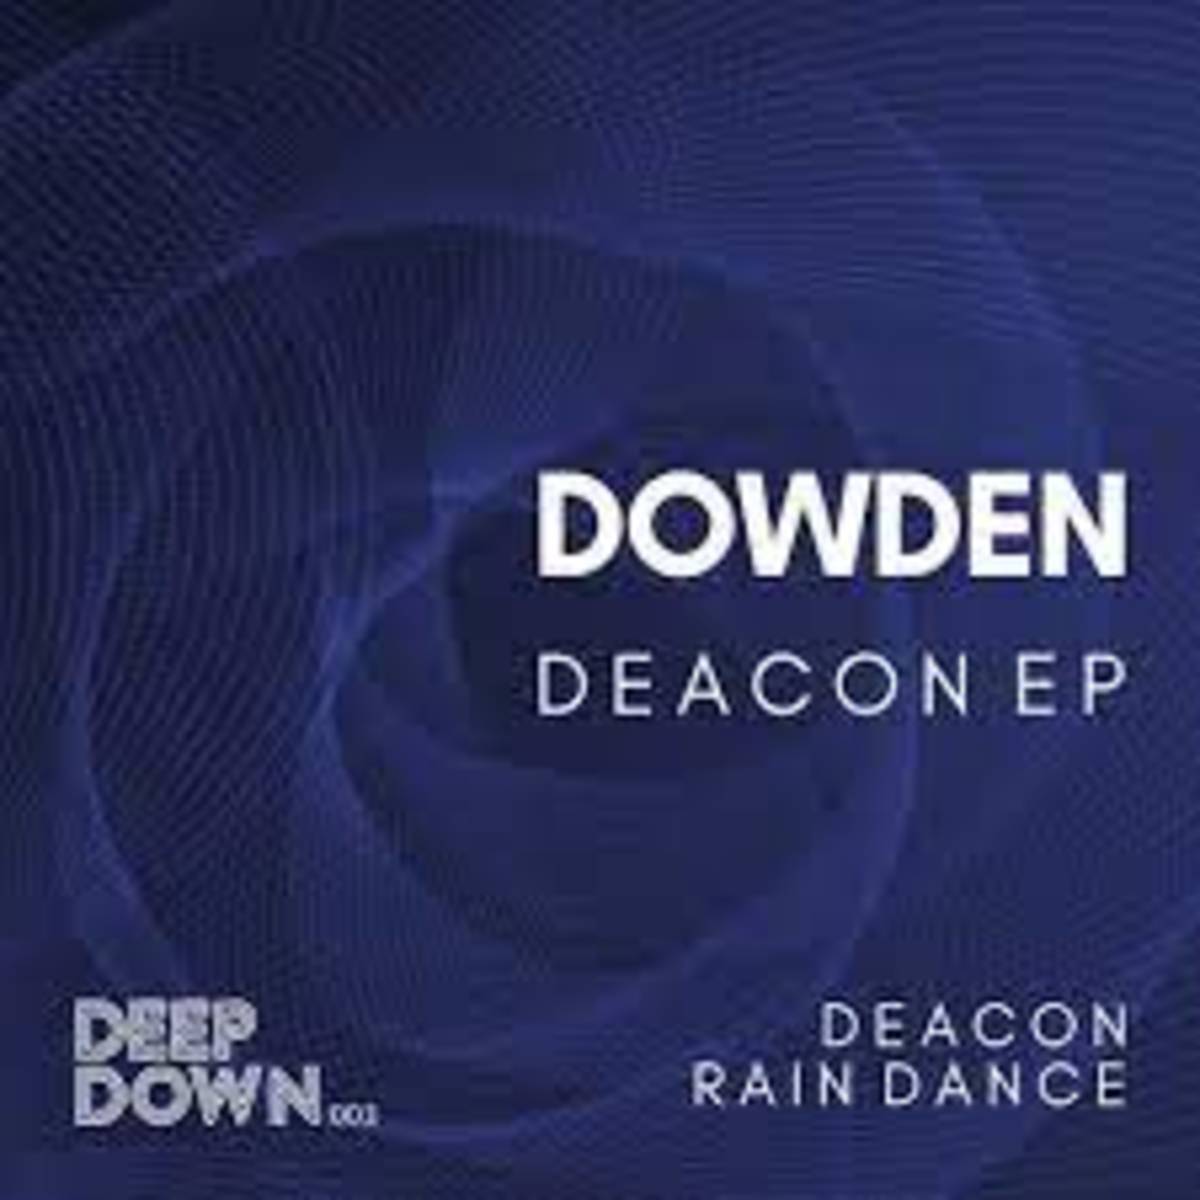 "DEACON (ORIGINAL MIX)" - DOWDEN [DEEP DOWN MUSIC]